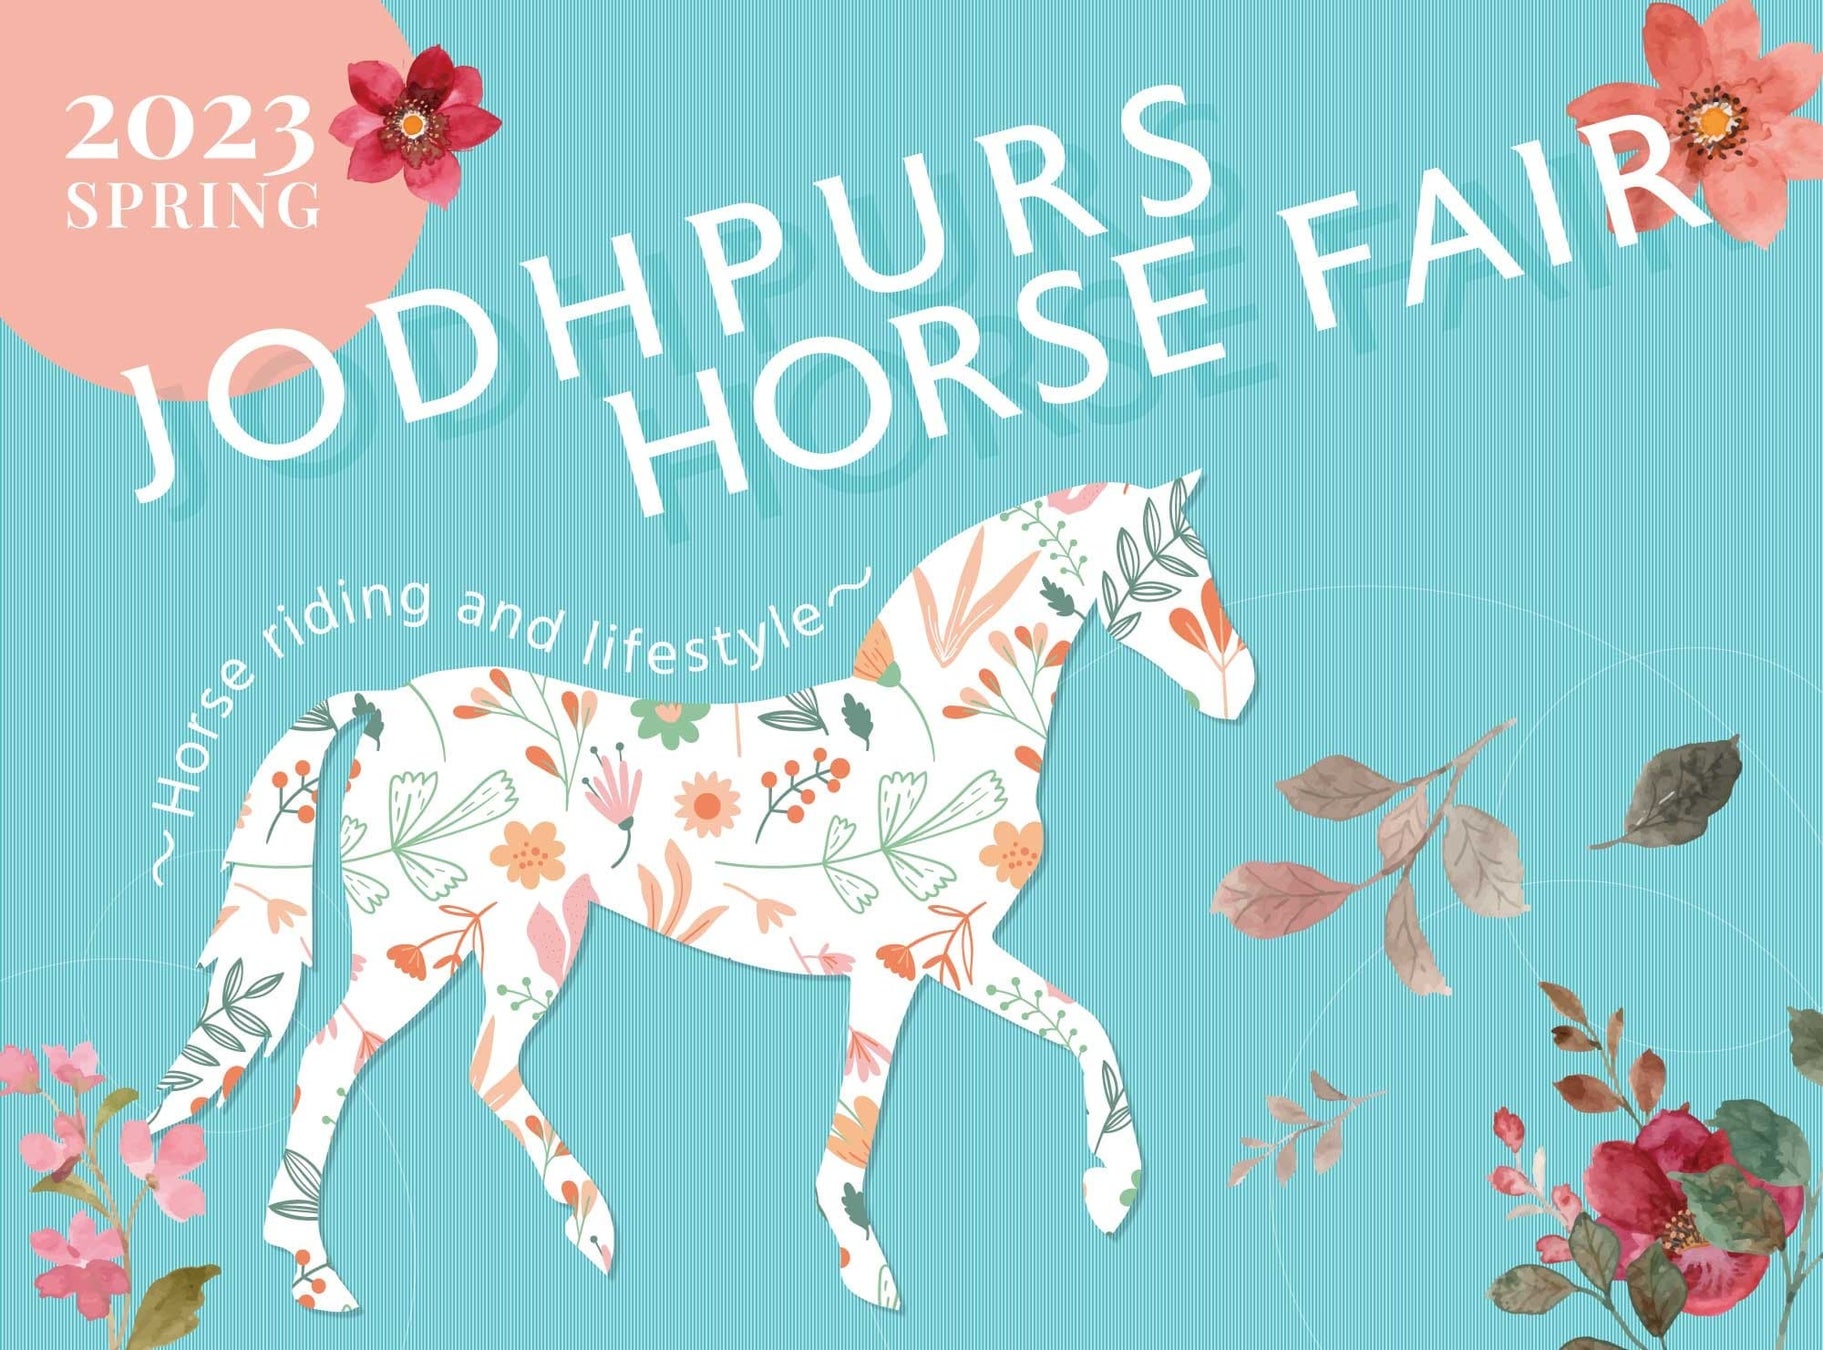 馬や乗馬に関するモノやコトを集めたイベント『JODHPURS ホースフェア』3月31日よりエルおおさかにて開催